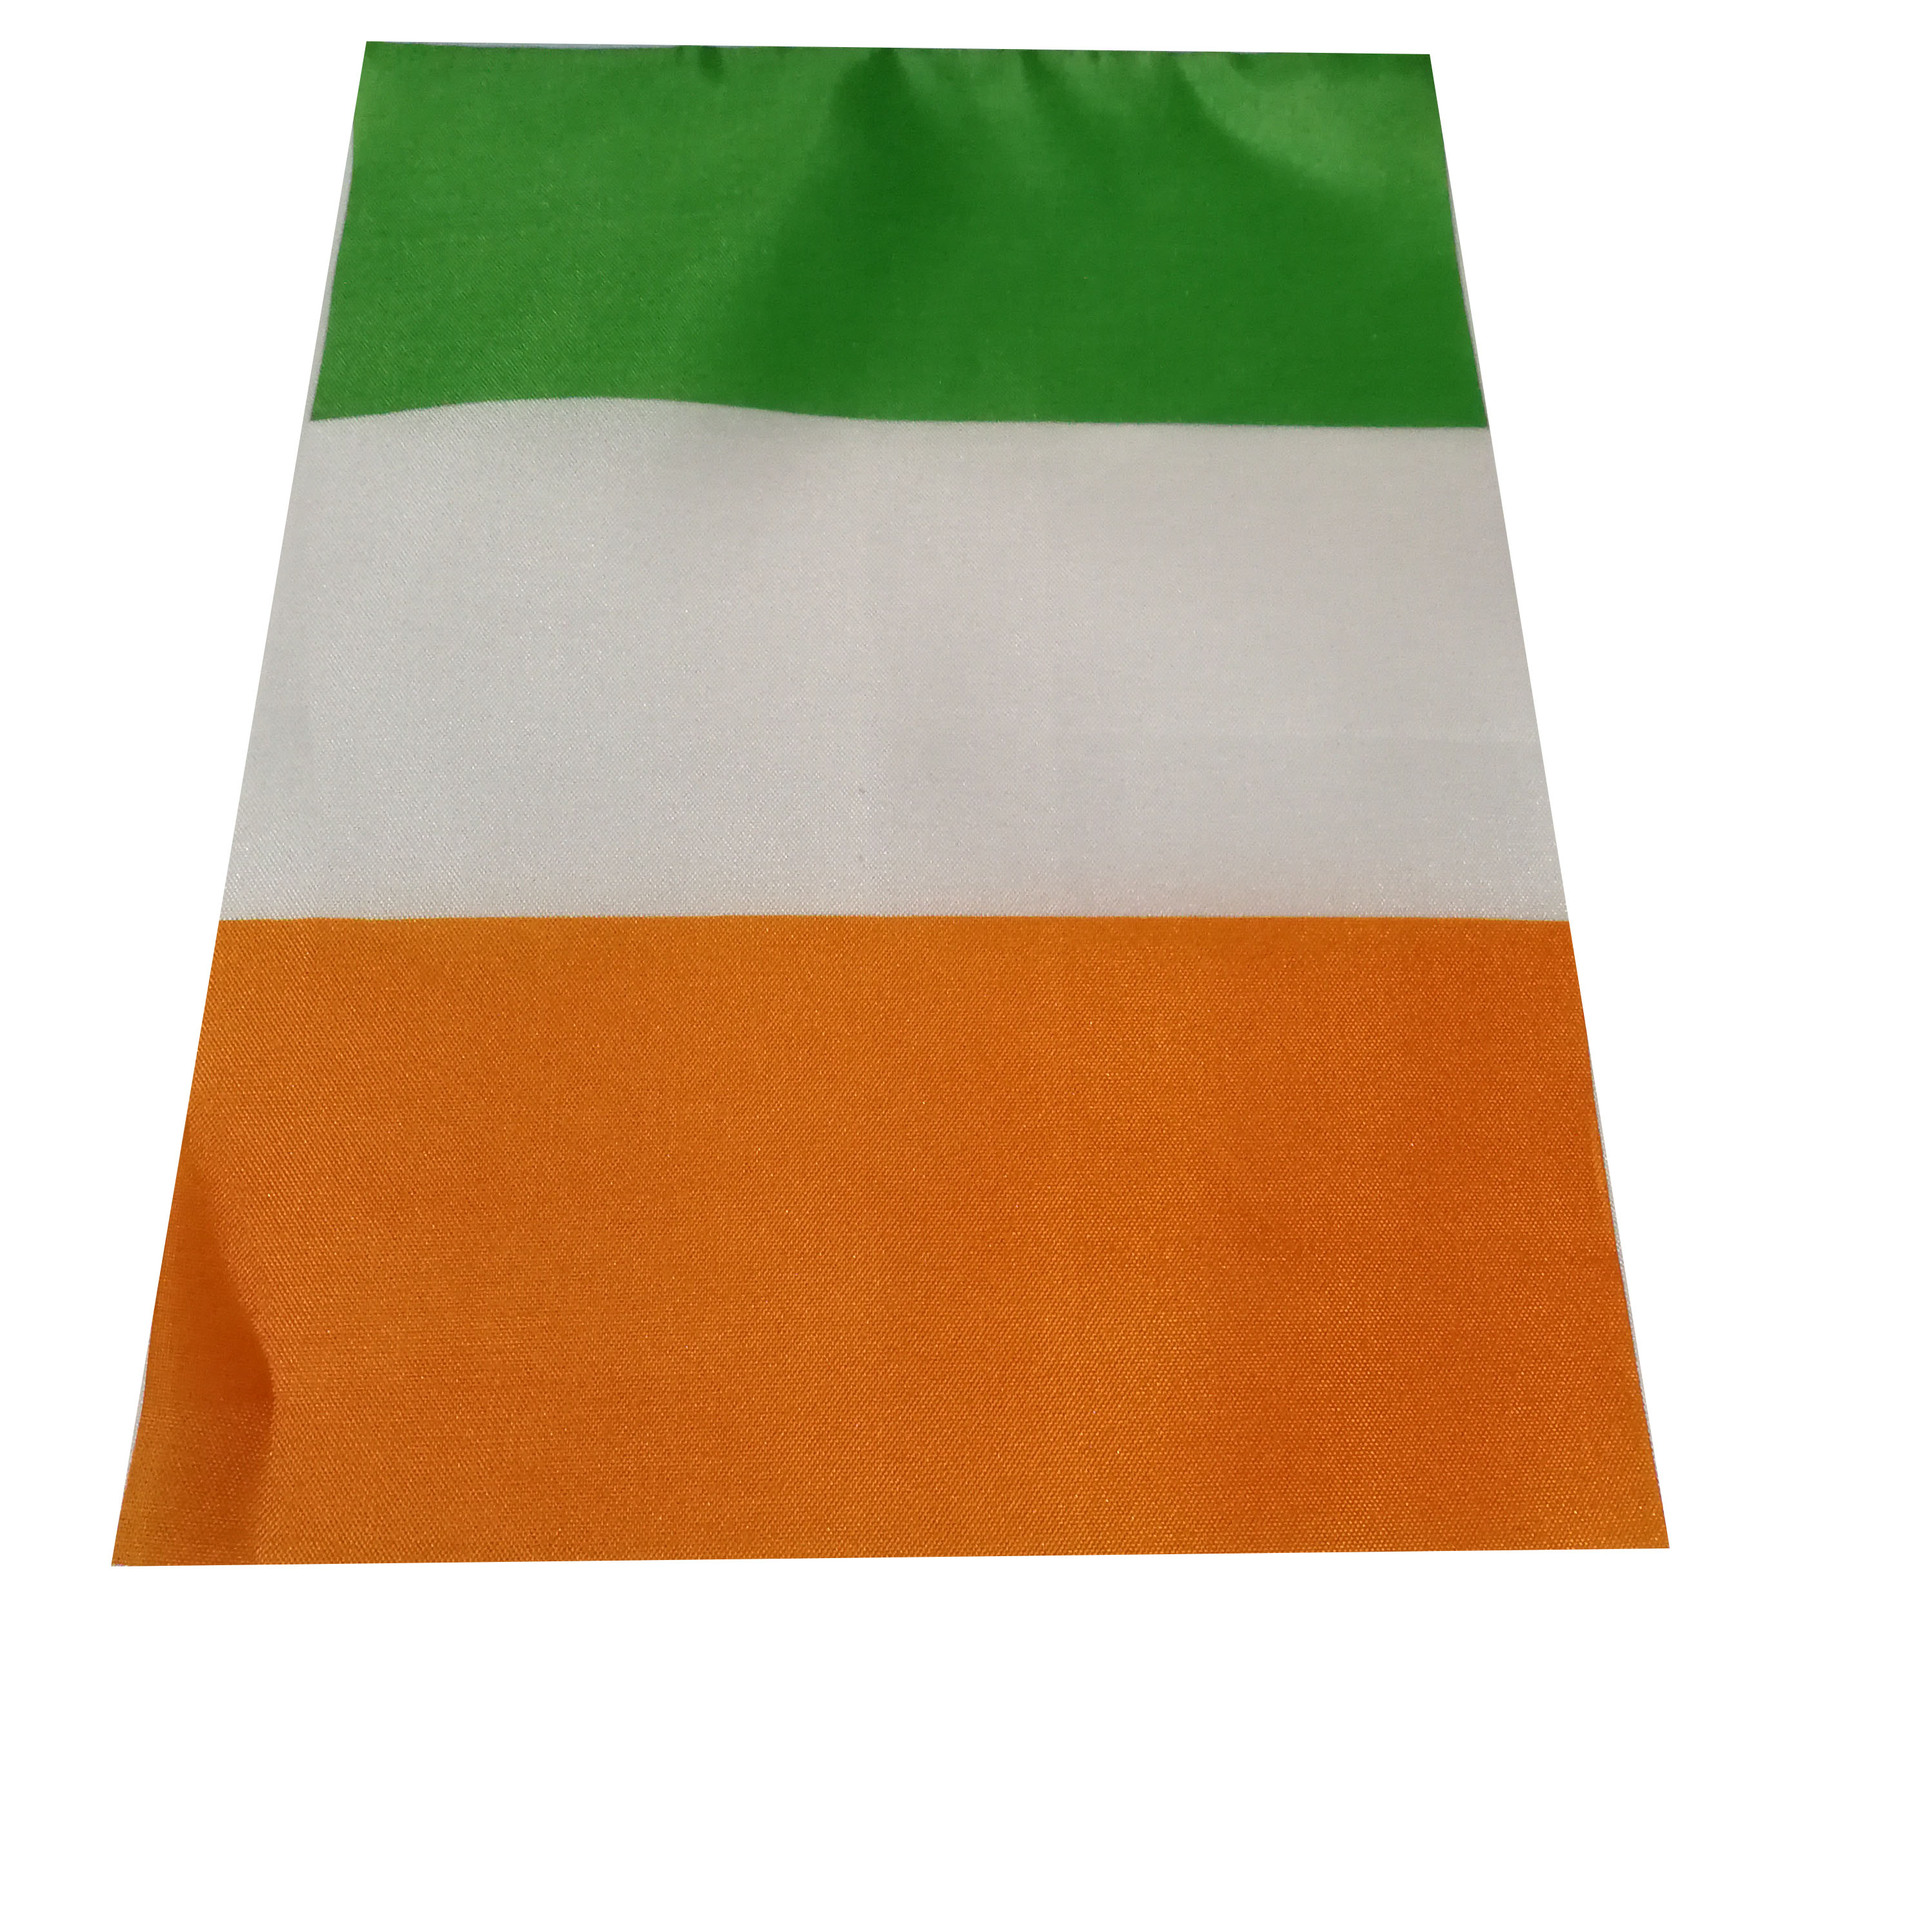 爱尔兰旗帜国旗手摇旗涤纶双面印刷塑料旗杆厂家直销详情图4